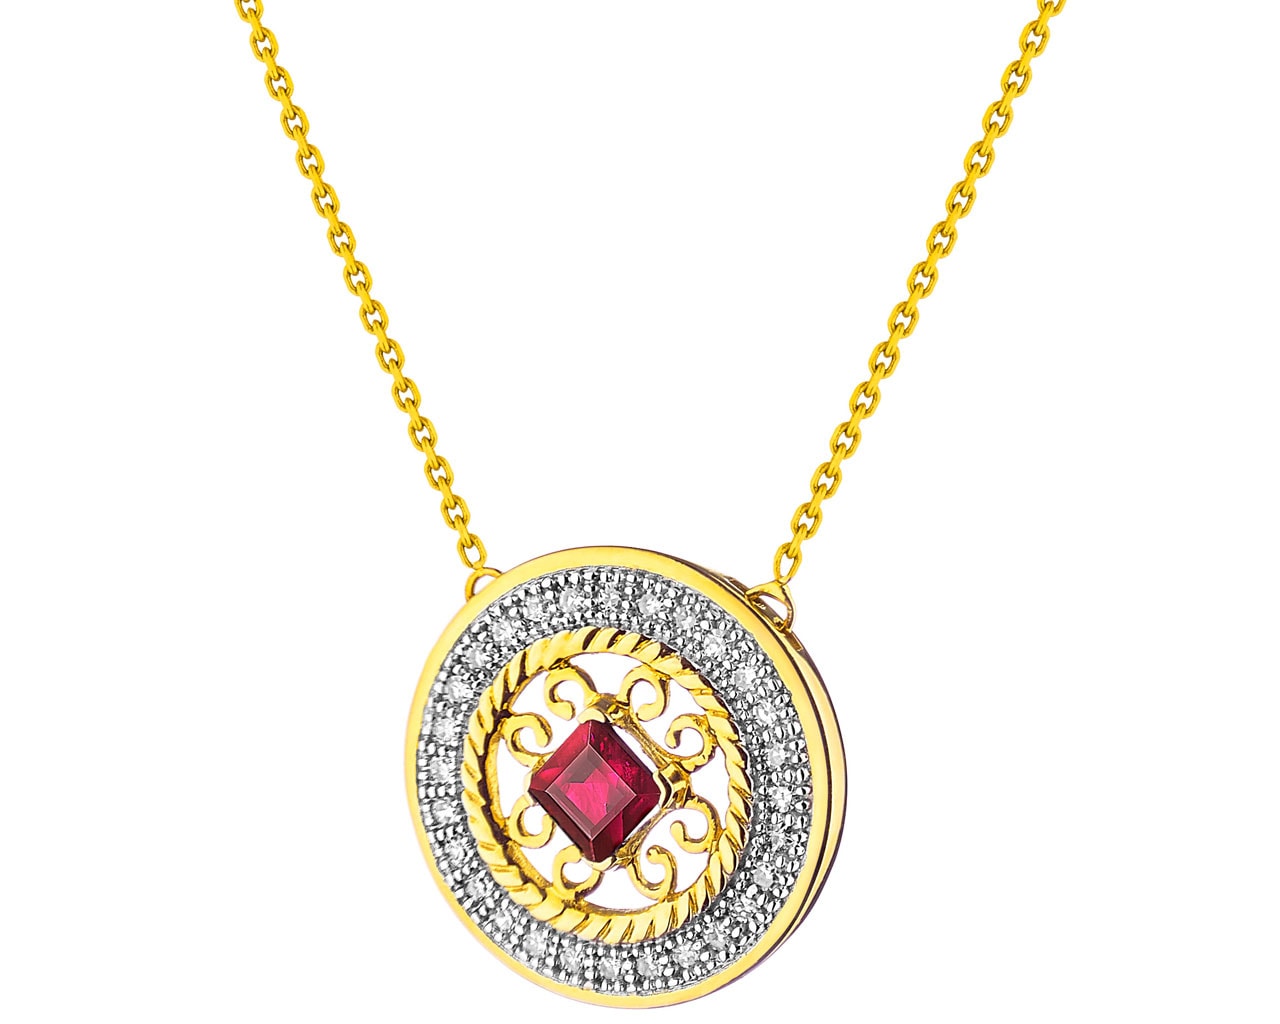 Zlatý náhrdelník s diamanty a rubínem - rozeta 0,08 ct - ryzost 585